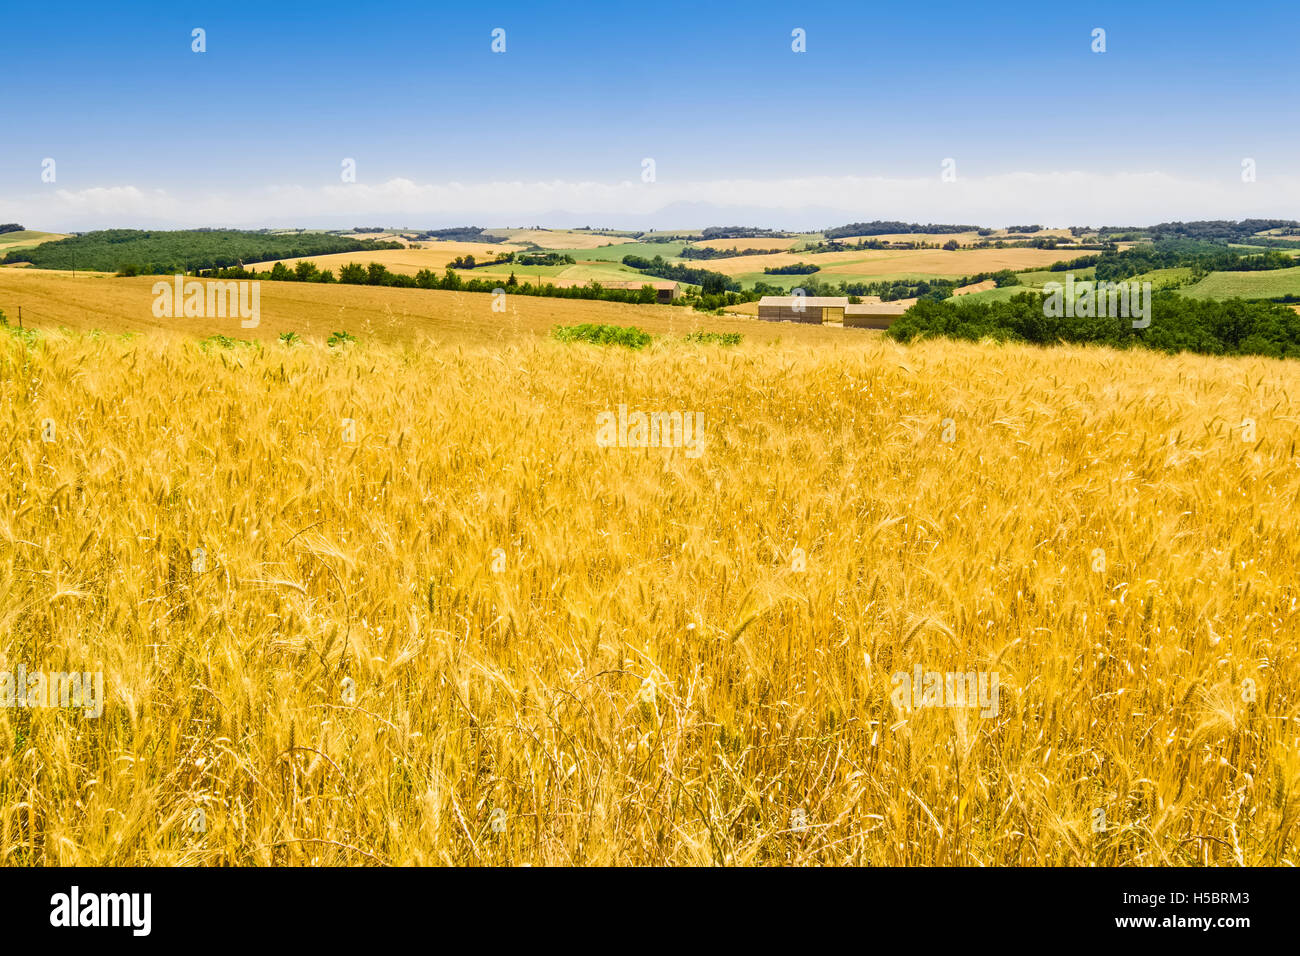 Landscape near Toulouse, France Stock Photo